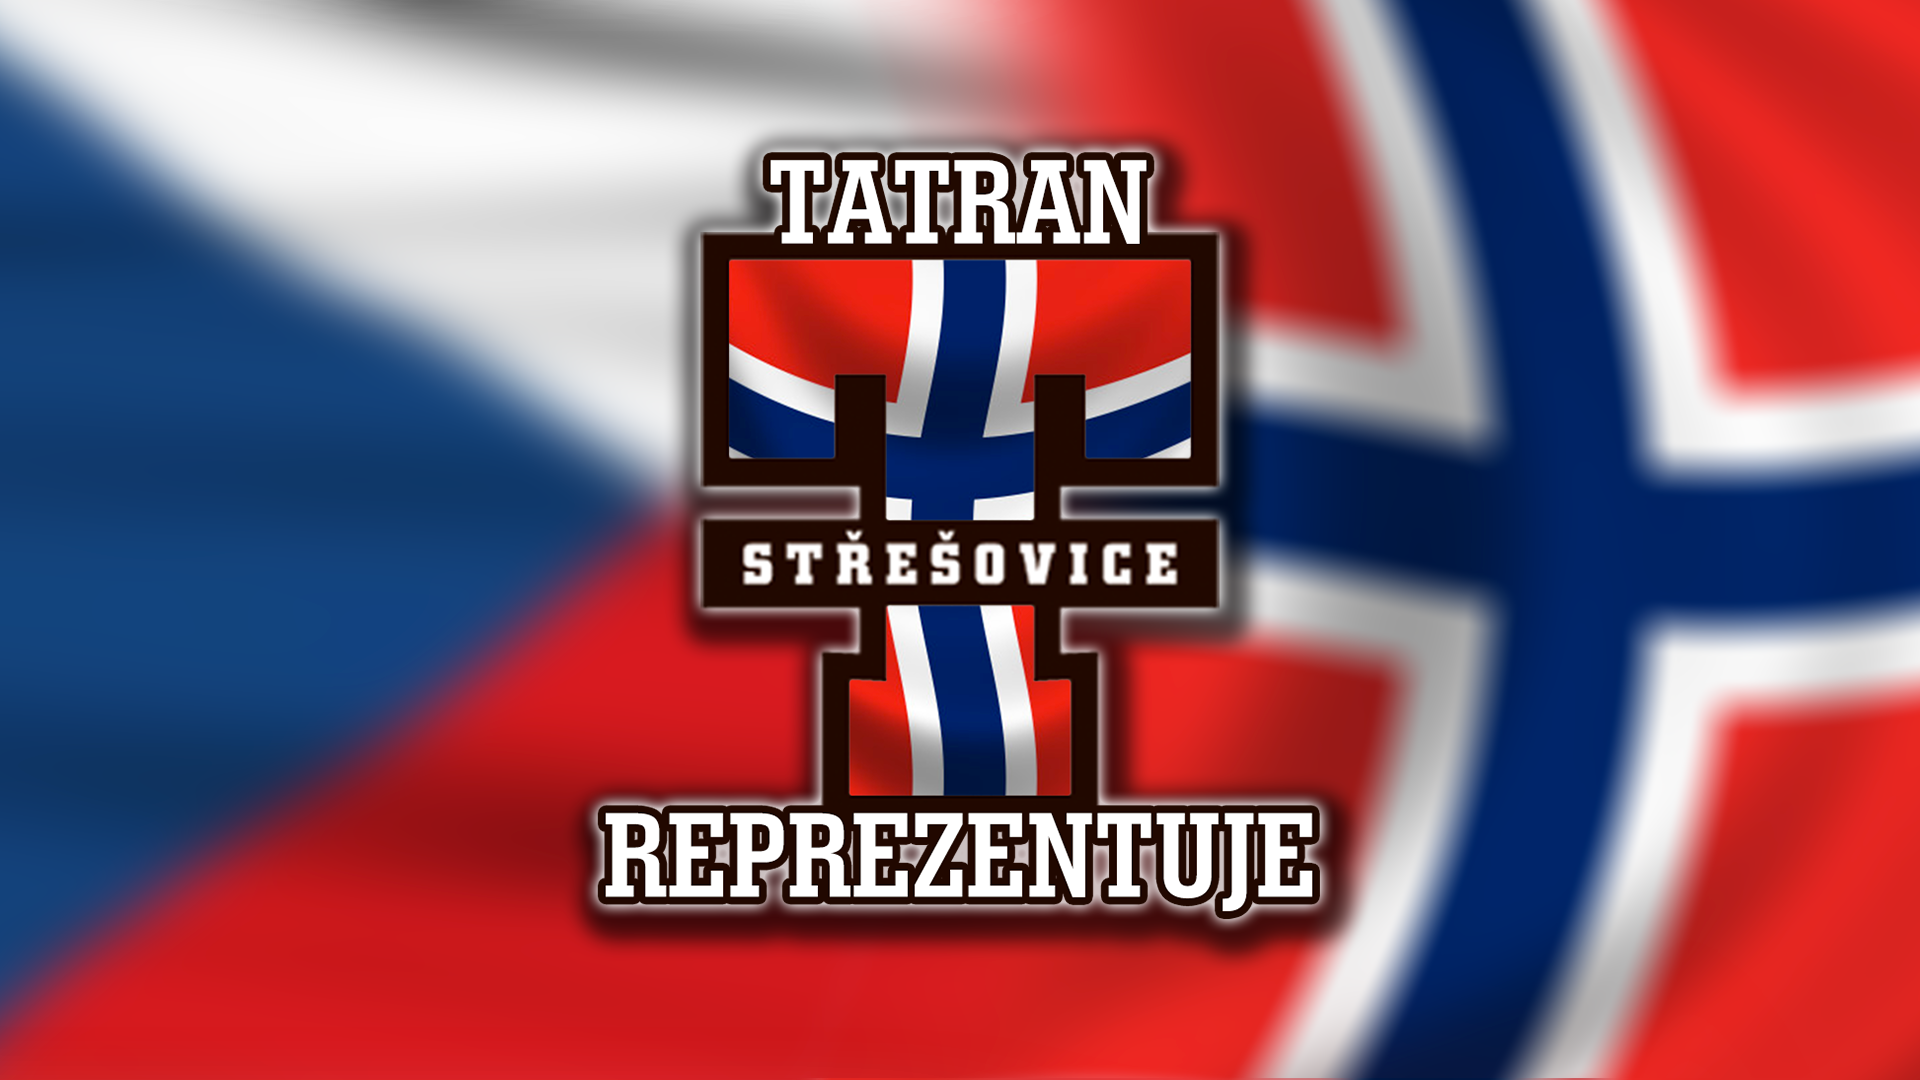 Norsk krl Harald V. u v, co je Tatran Steovice